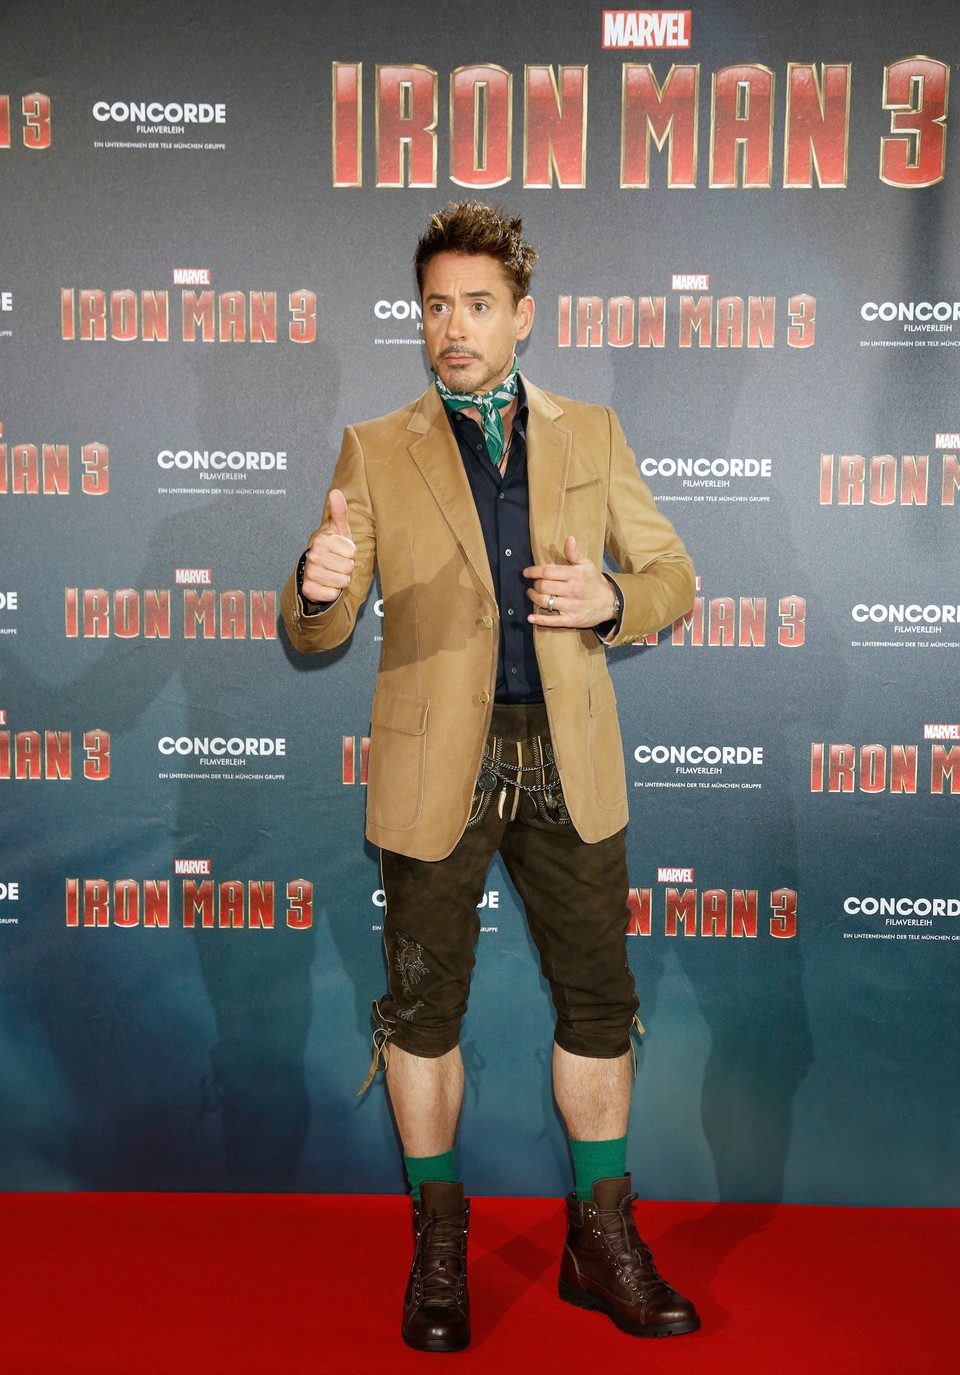 Robert Downey Jr. trägt beim Pressetermin in München eine Lederhose.